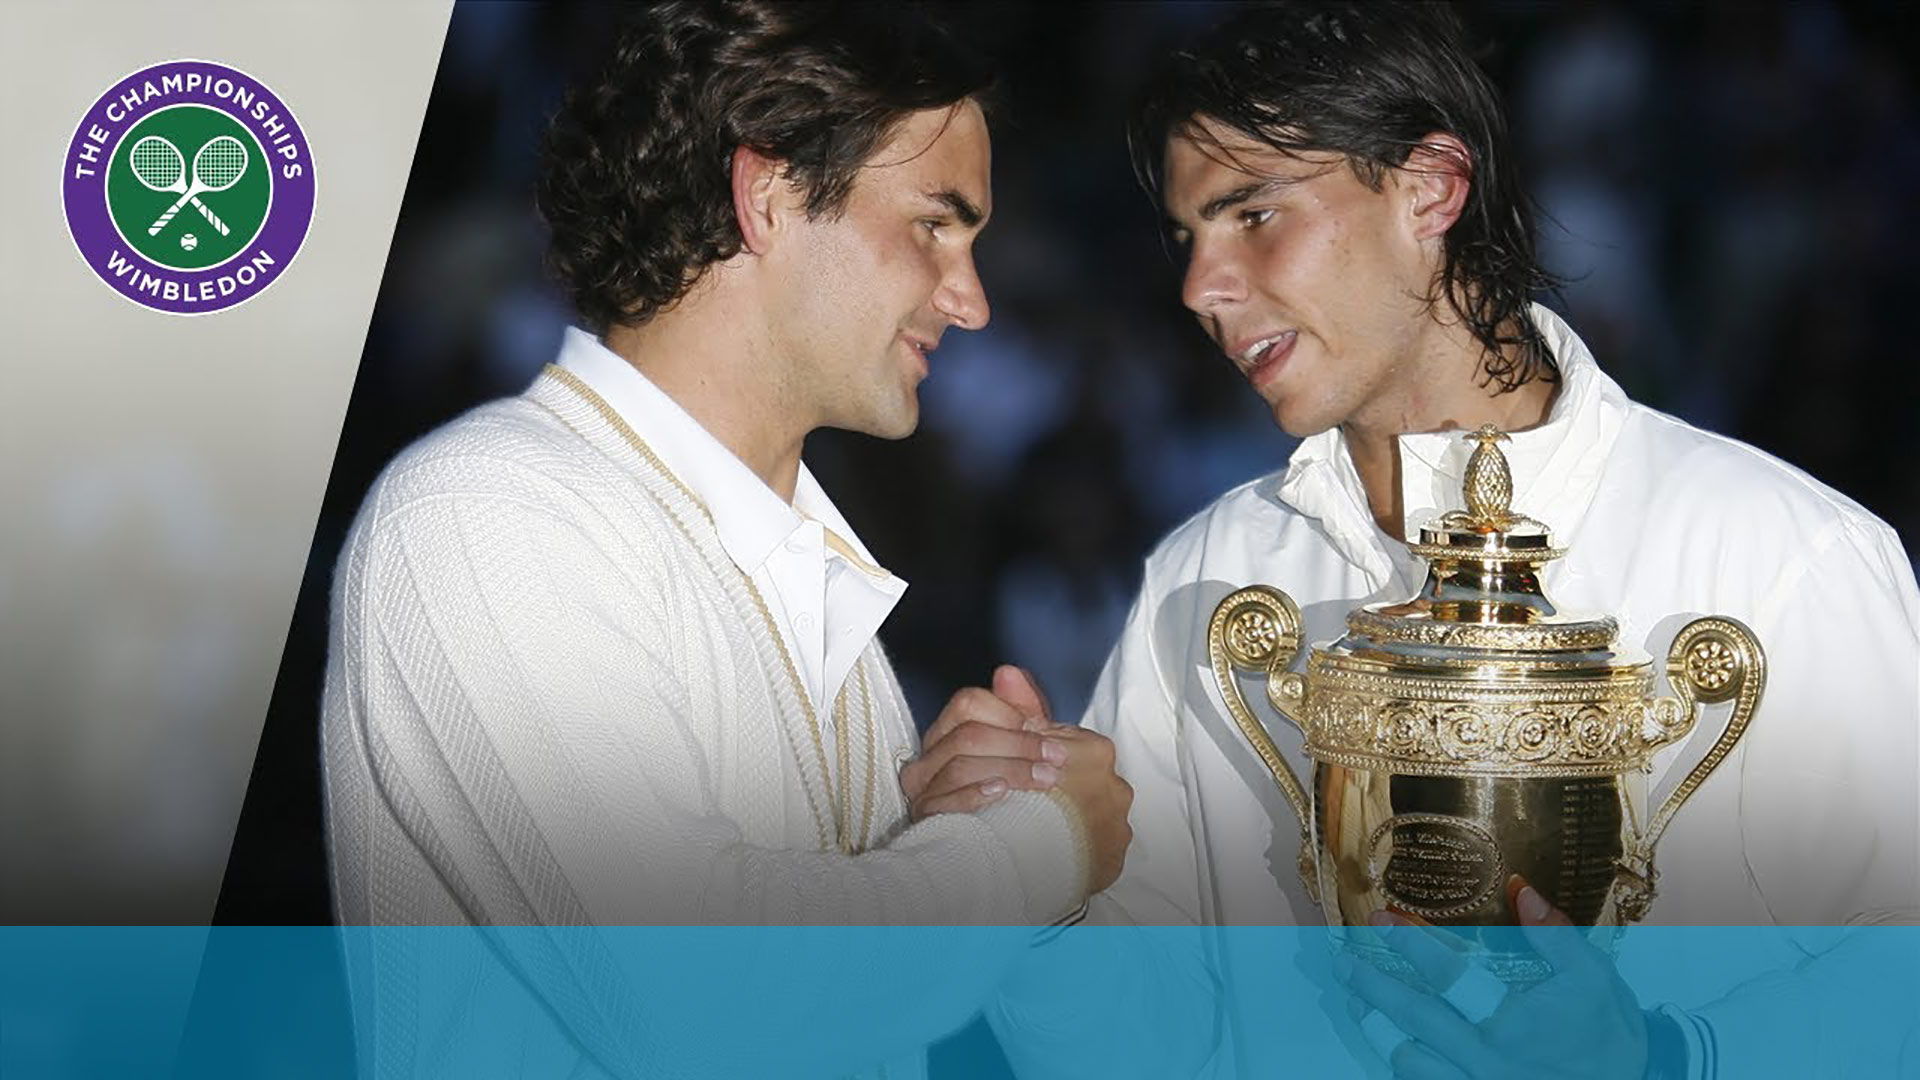 Siêu kinh điển Federer - Nadal: 10 năm trận đấu thiên niên kỷ (Chung kết Wimbledon 2008) - 21